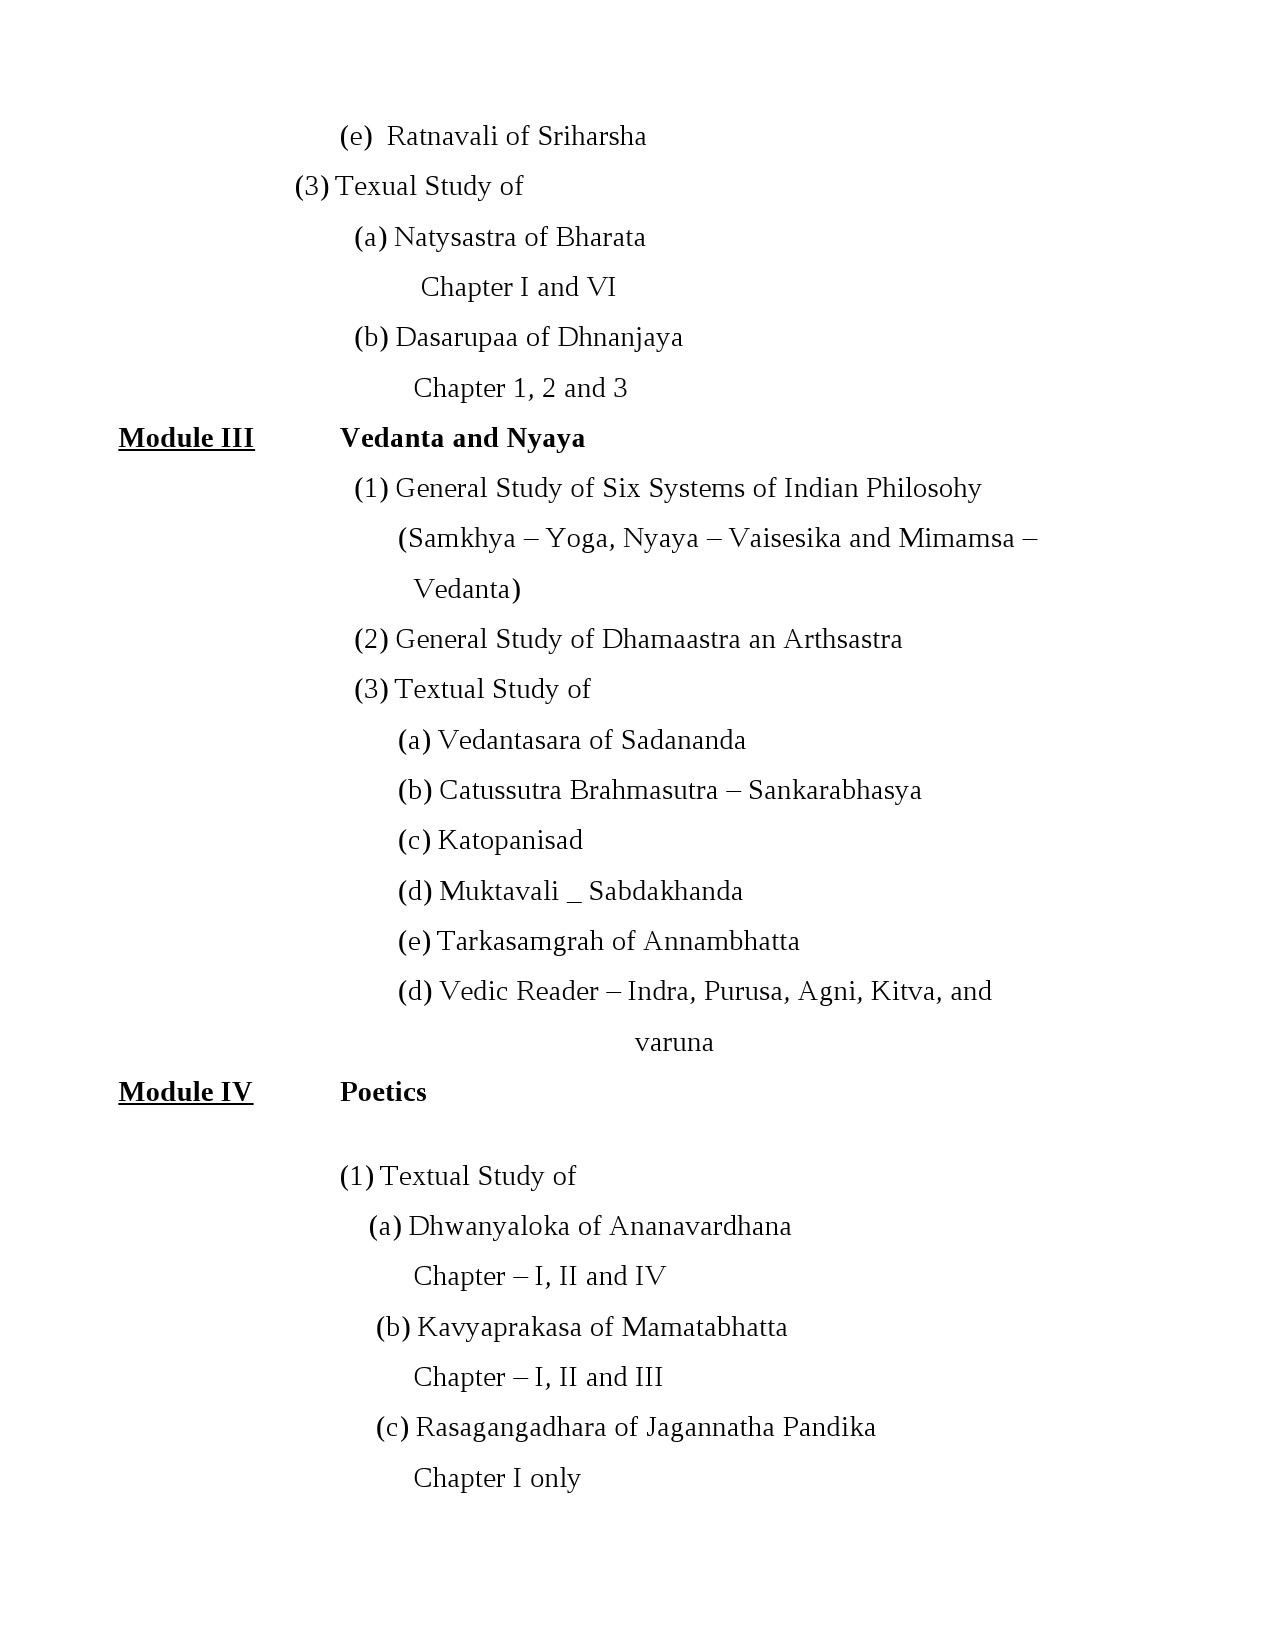 Sanskrit Syllabus for Kerala PSC 2021 Exam - Notification Image 2